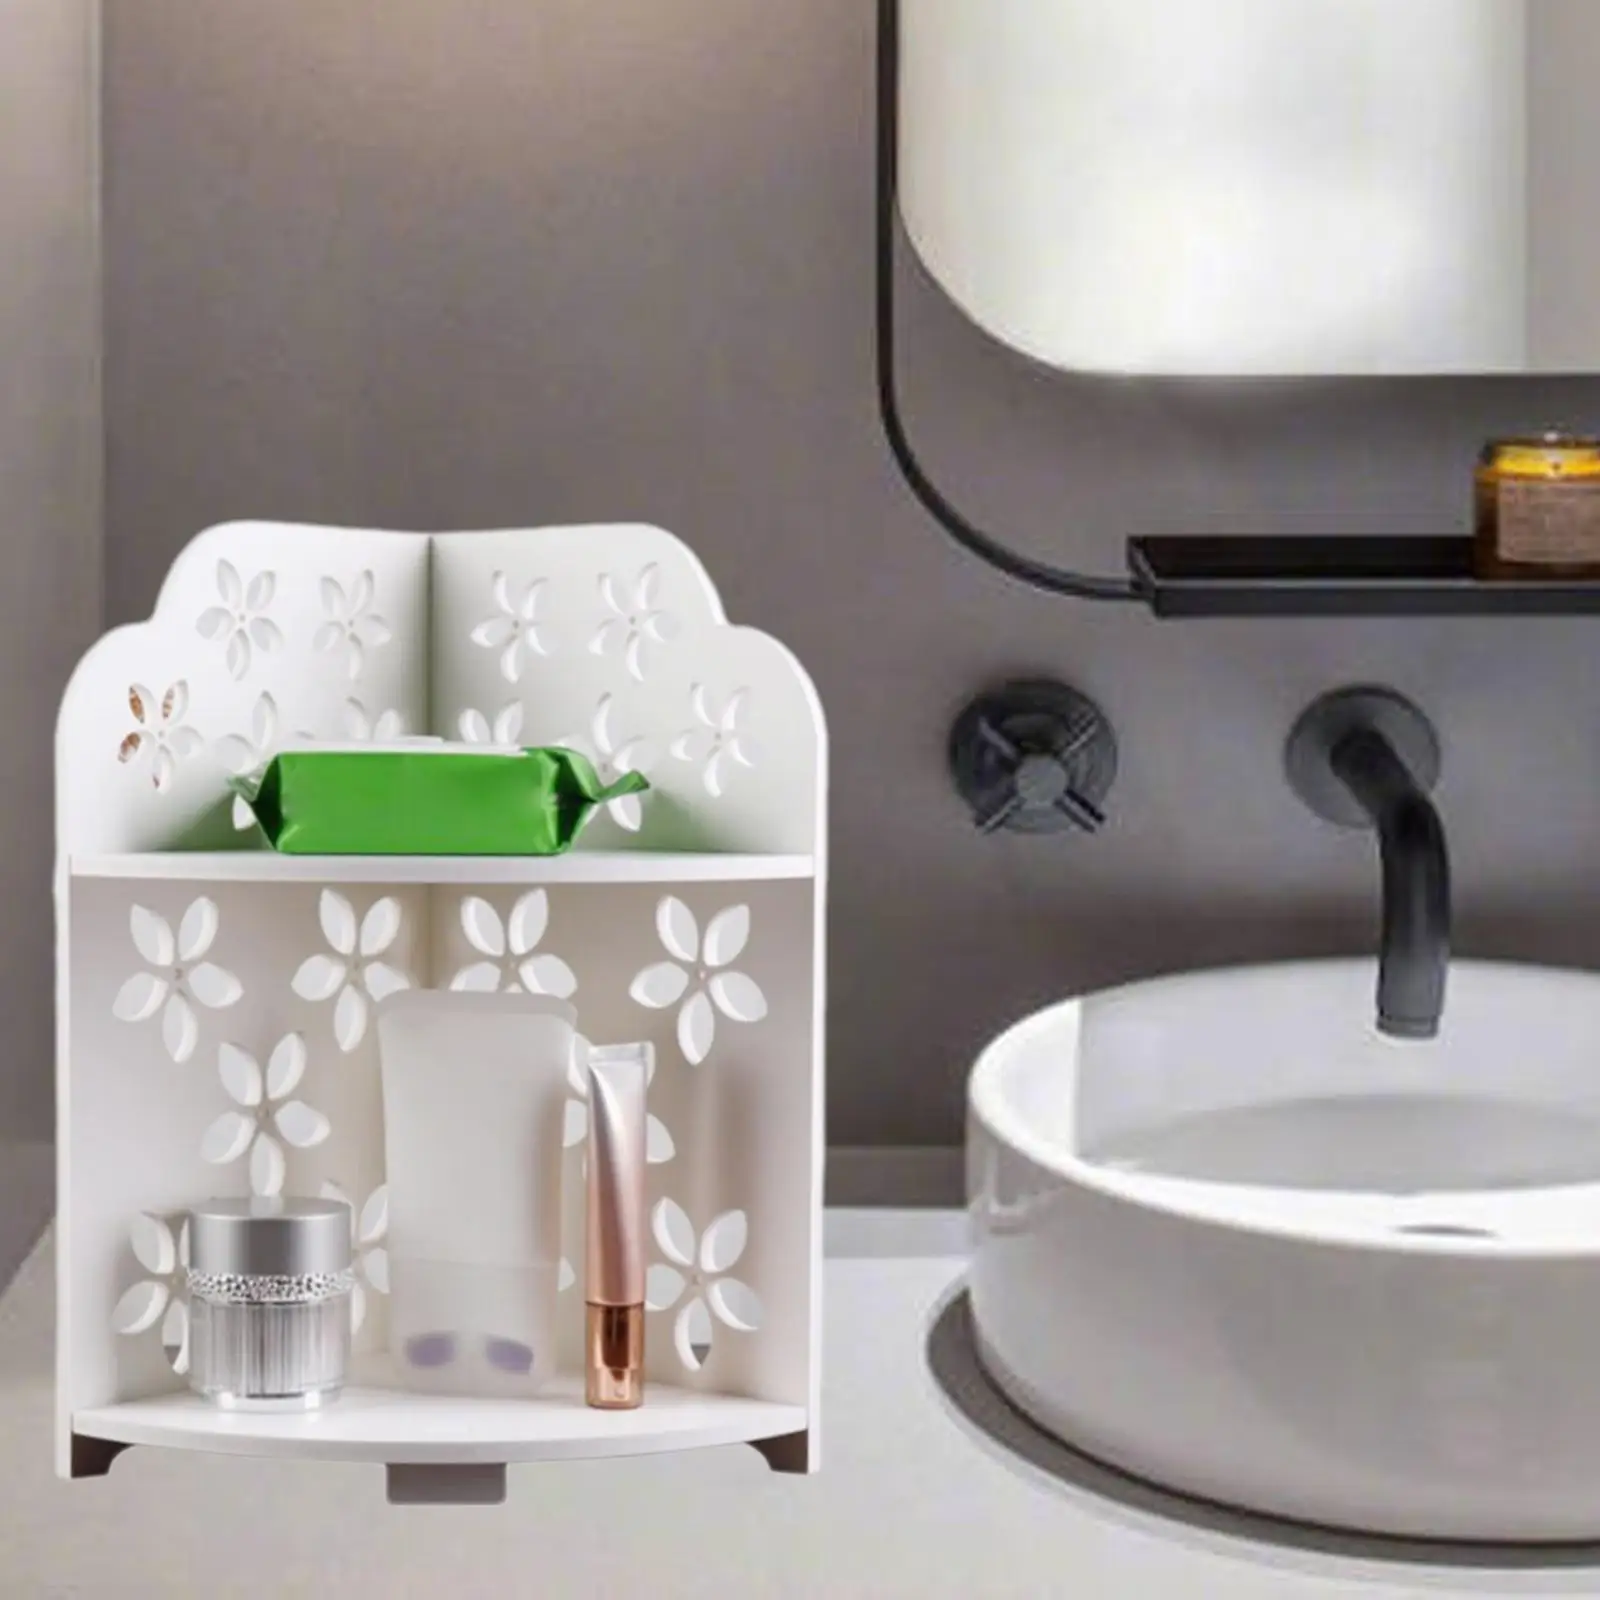 Bathroom Triangular Rack Wall-mounted Shower Shelf Holder Kitchen Storage Rack Organizer Household Items Accessories